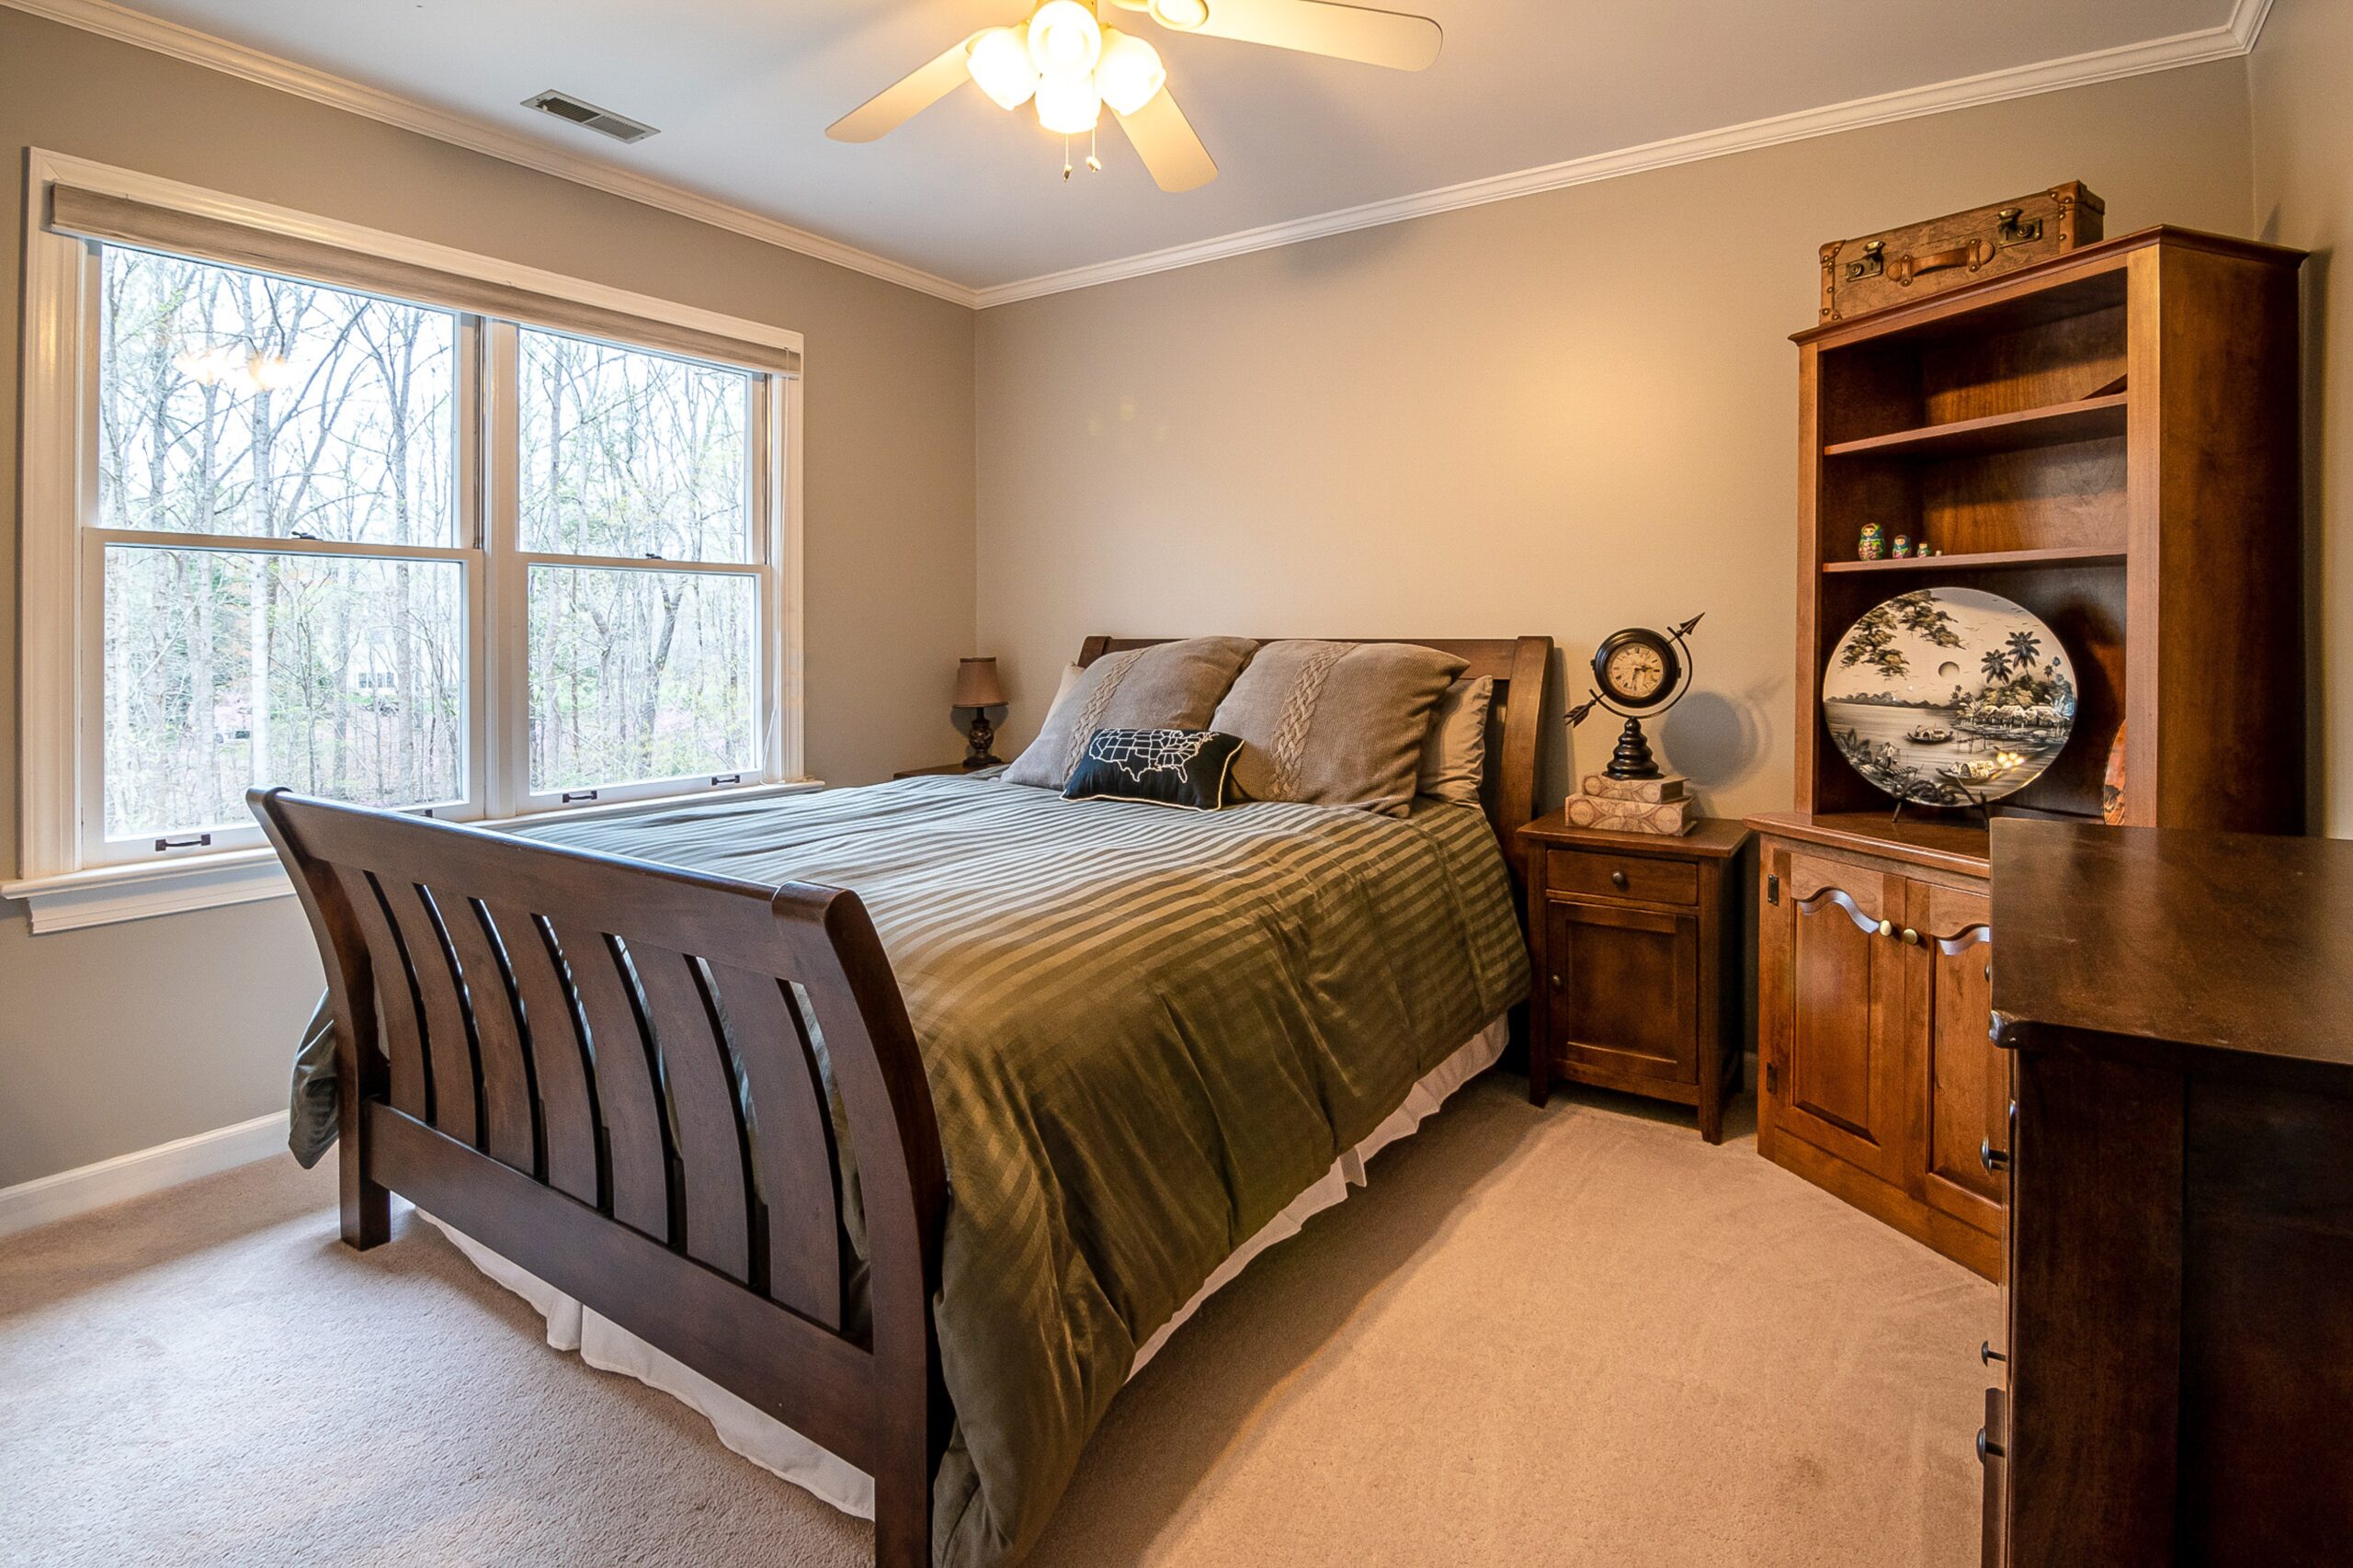 Łóżko 100×200 drewniane – idealne do małych przestrzeni